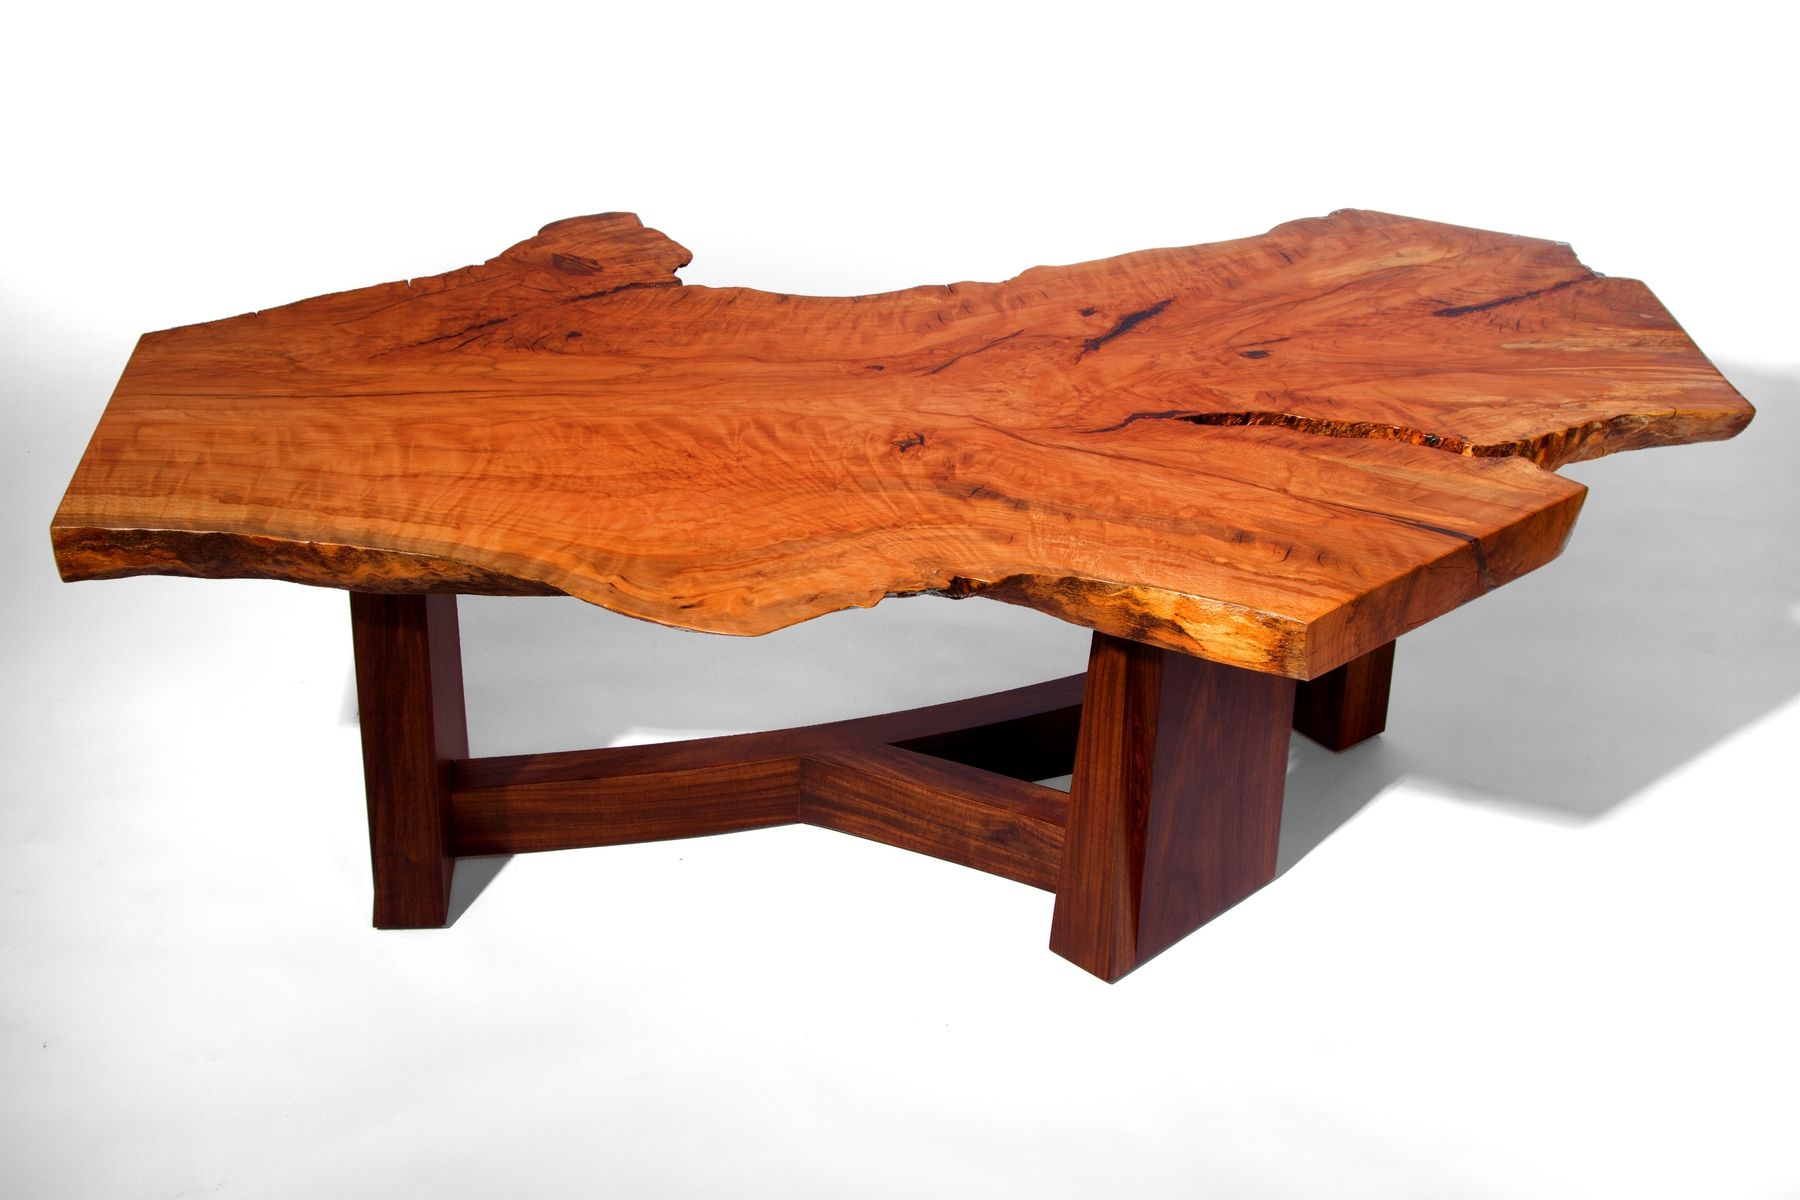 Гладкий край стола. Журнальный столик слэб карагач. Стол журнальный слэб дерева. Мебель из слэба дерева. Стол из слэба.